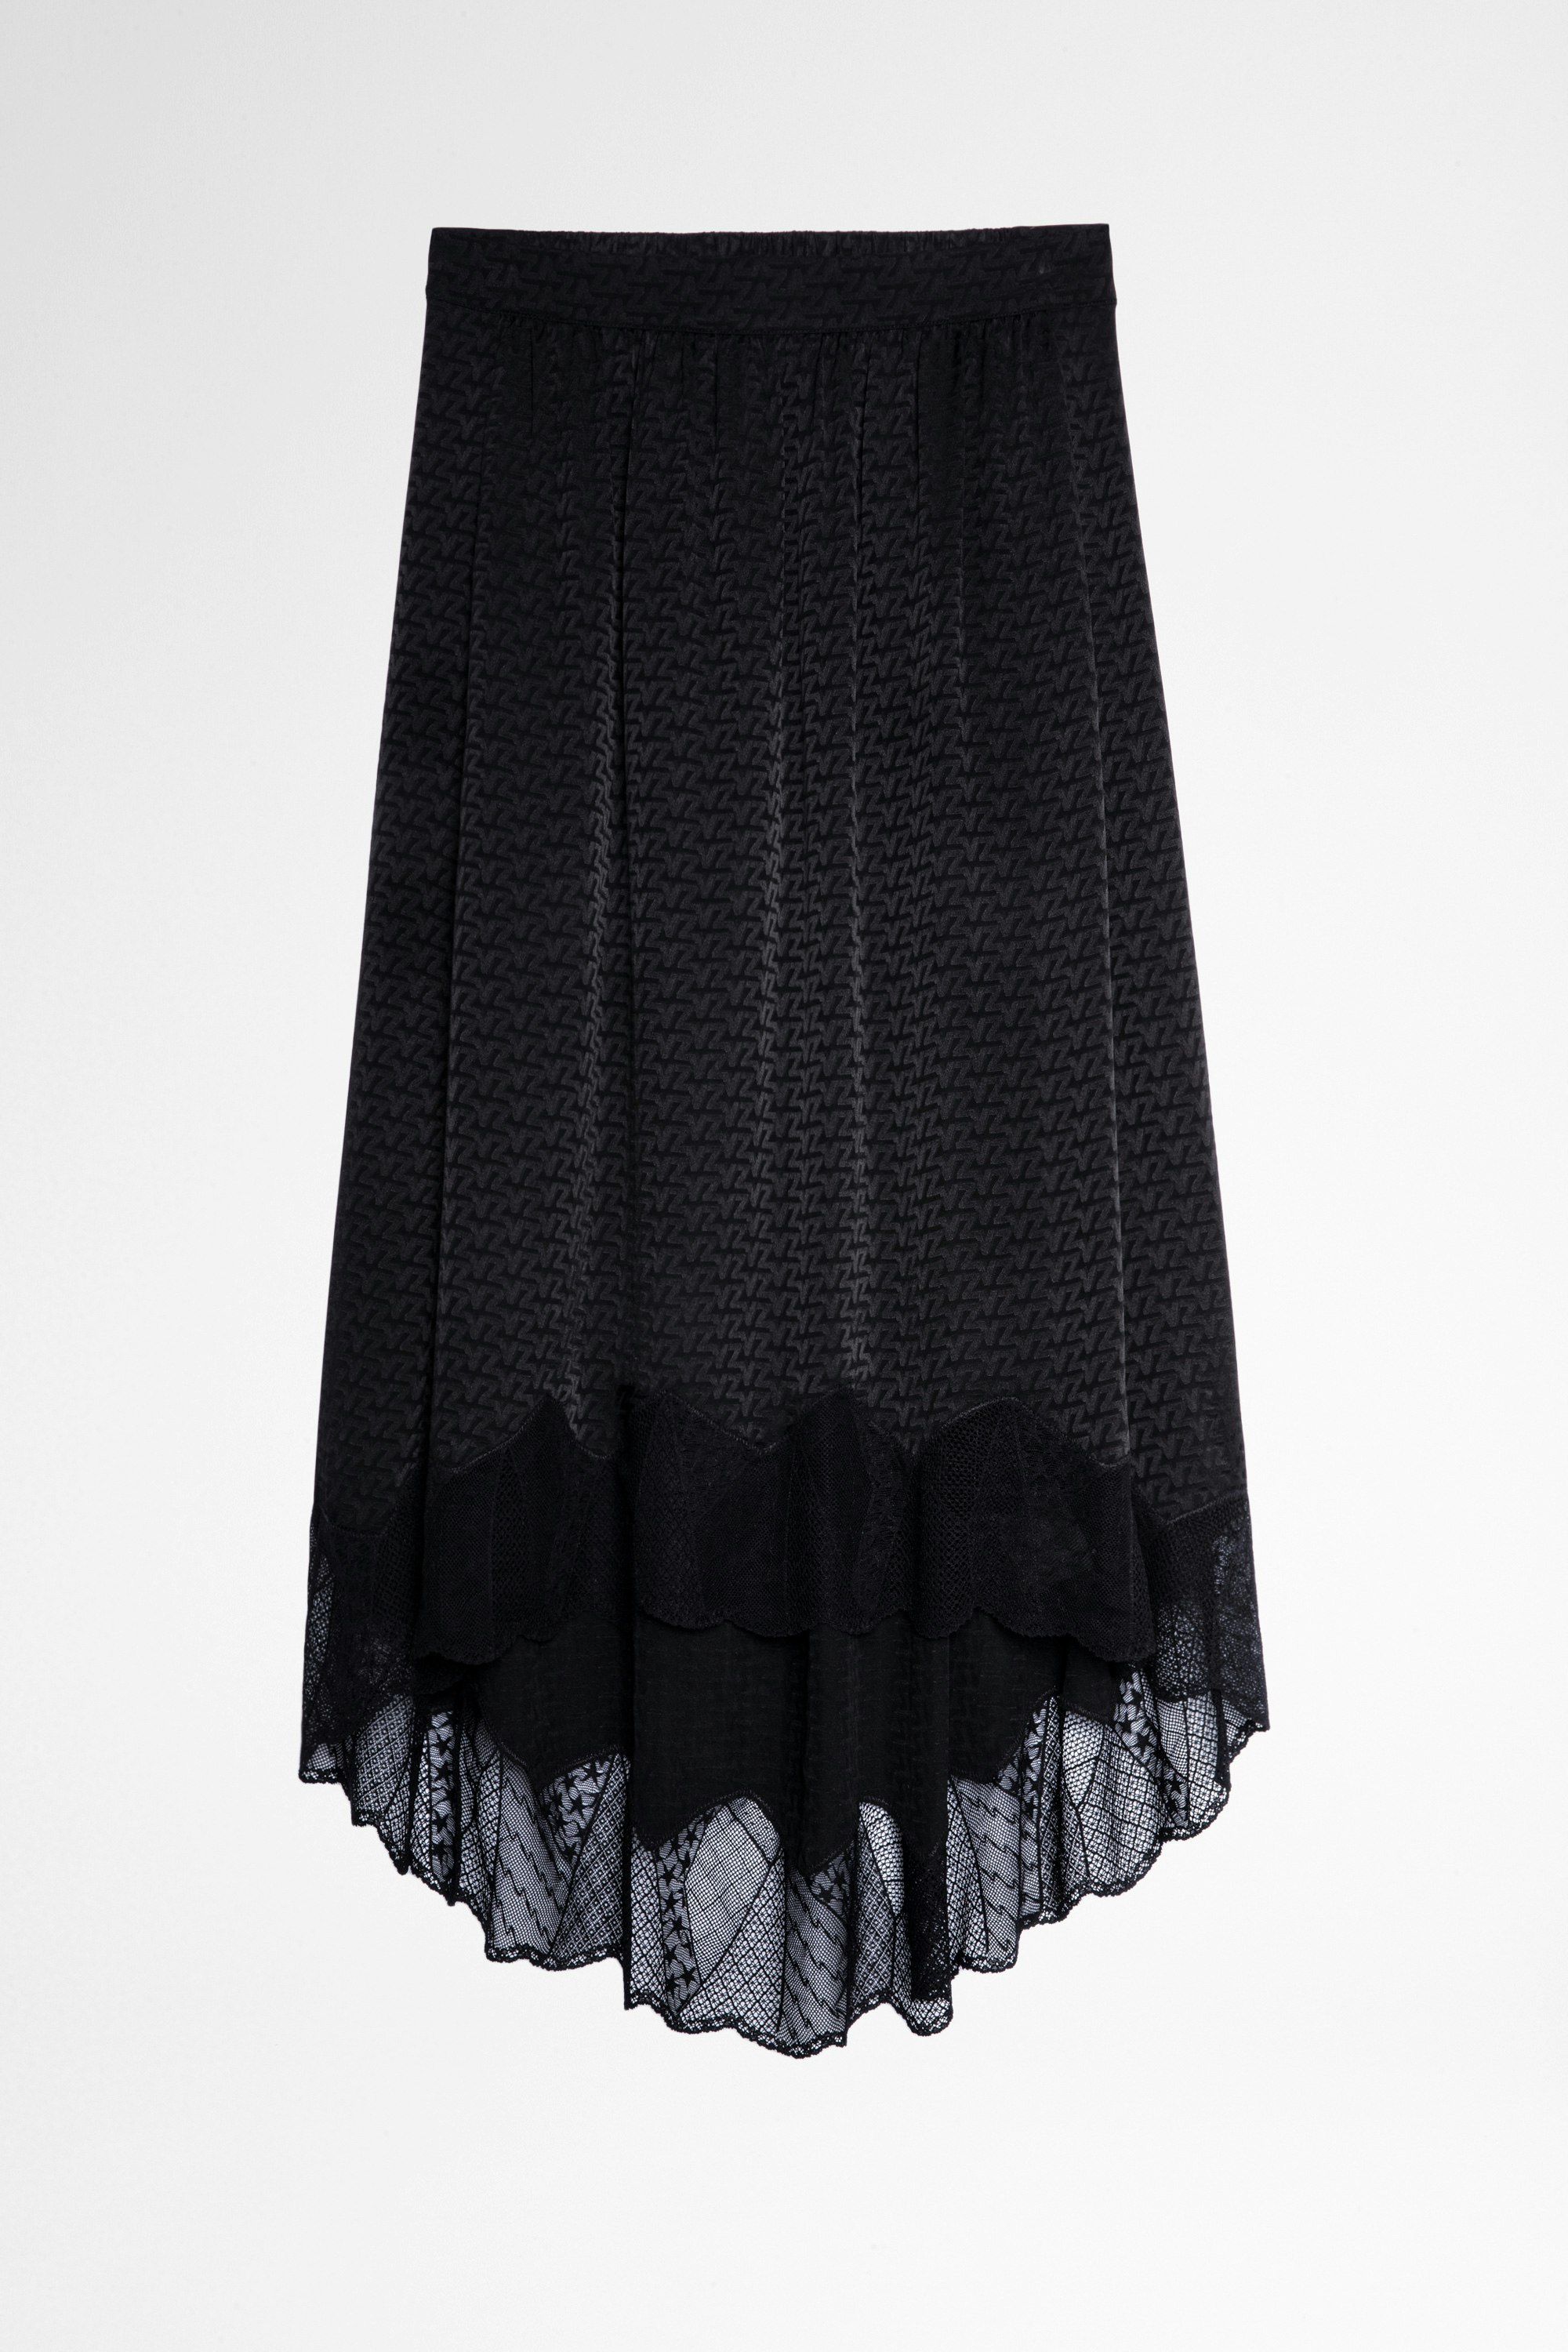 Joslin Jac ZV Silk Skirt Lingerie style silk skirt